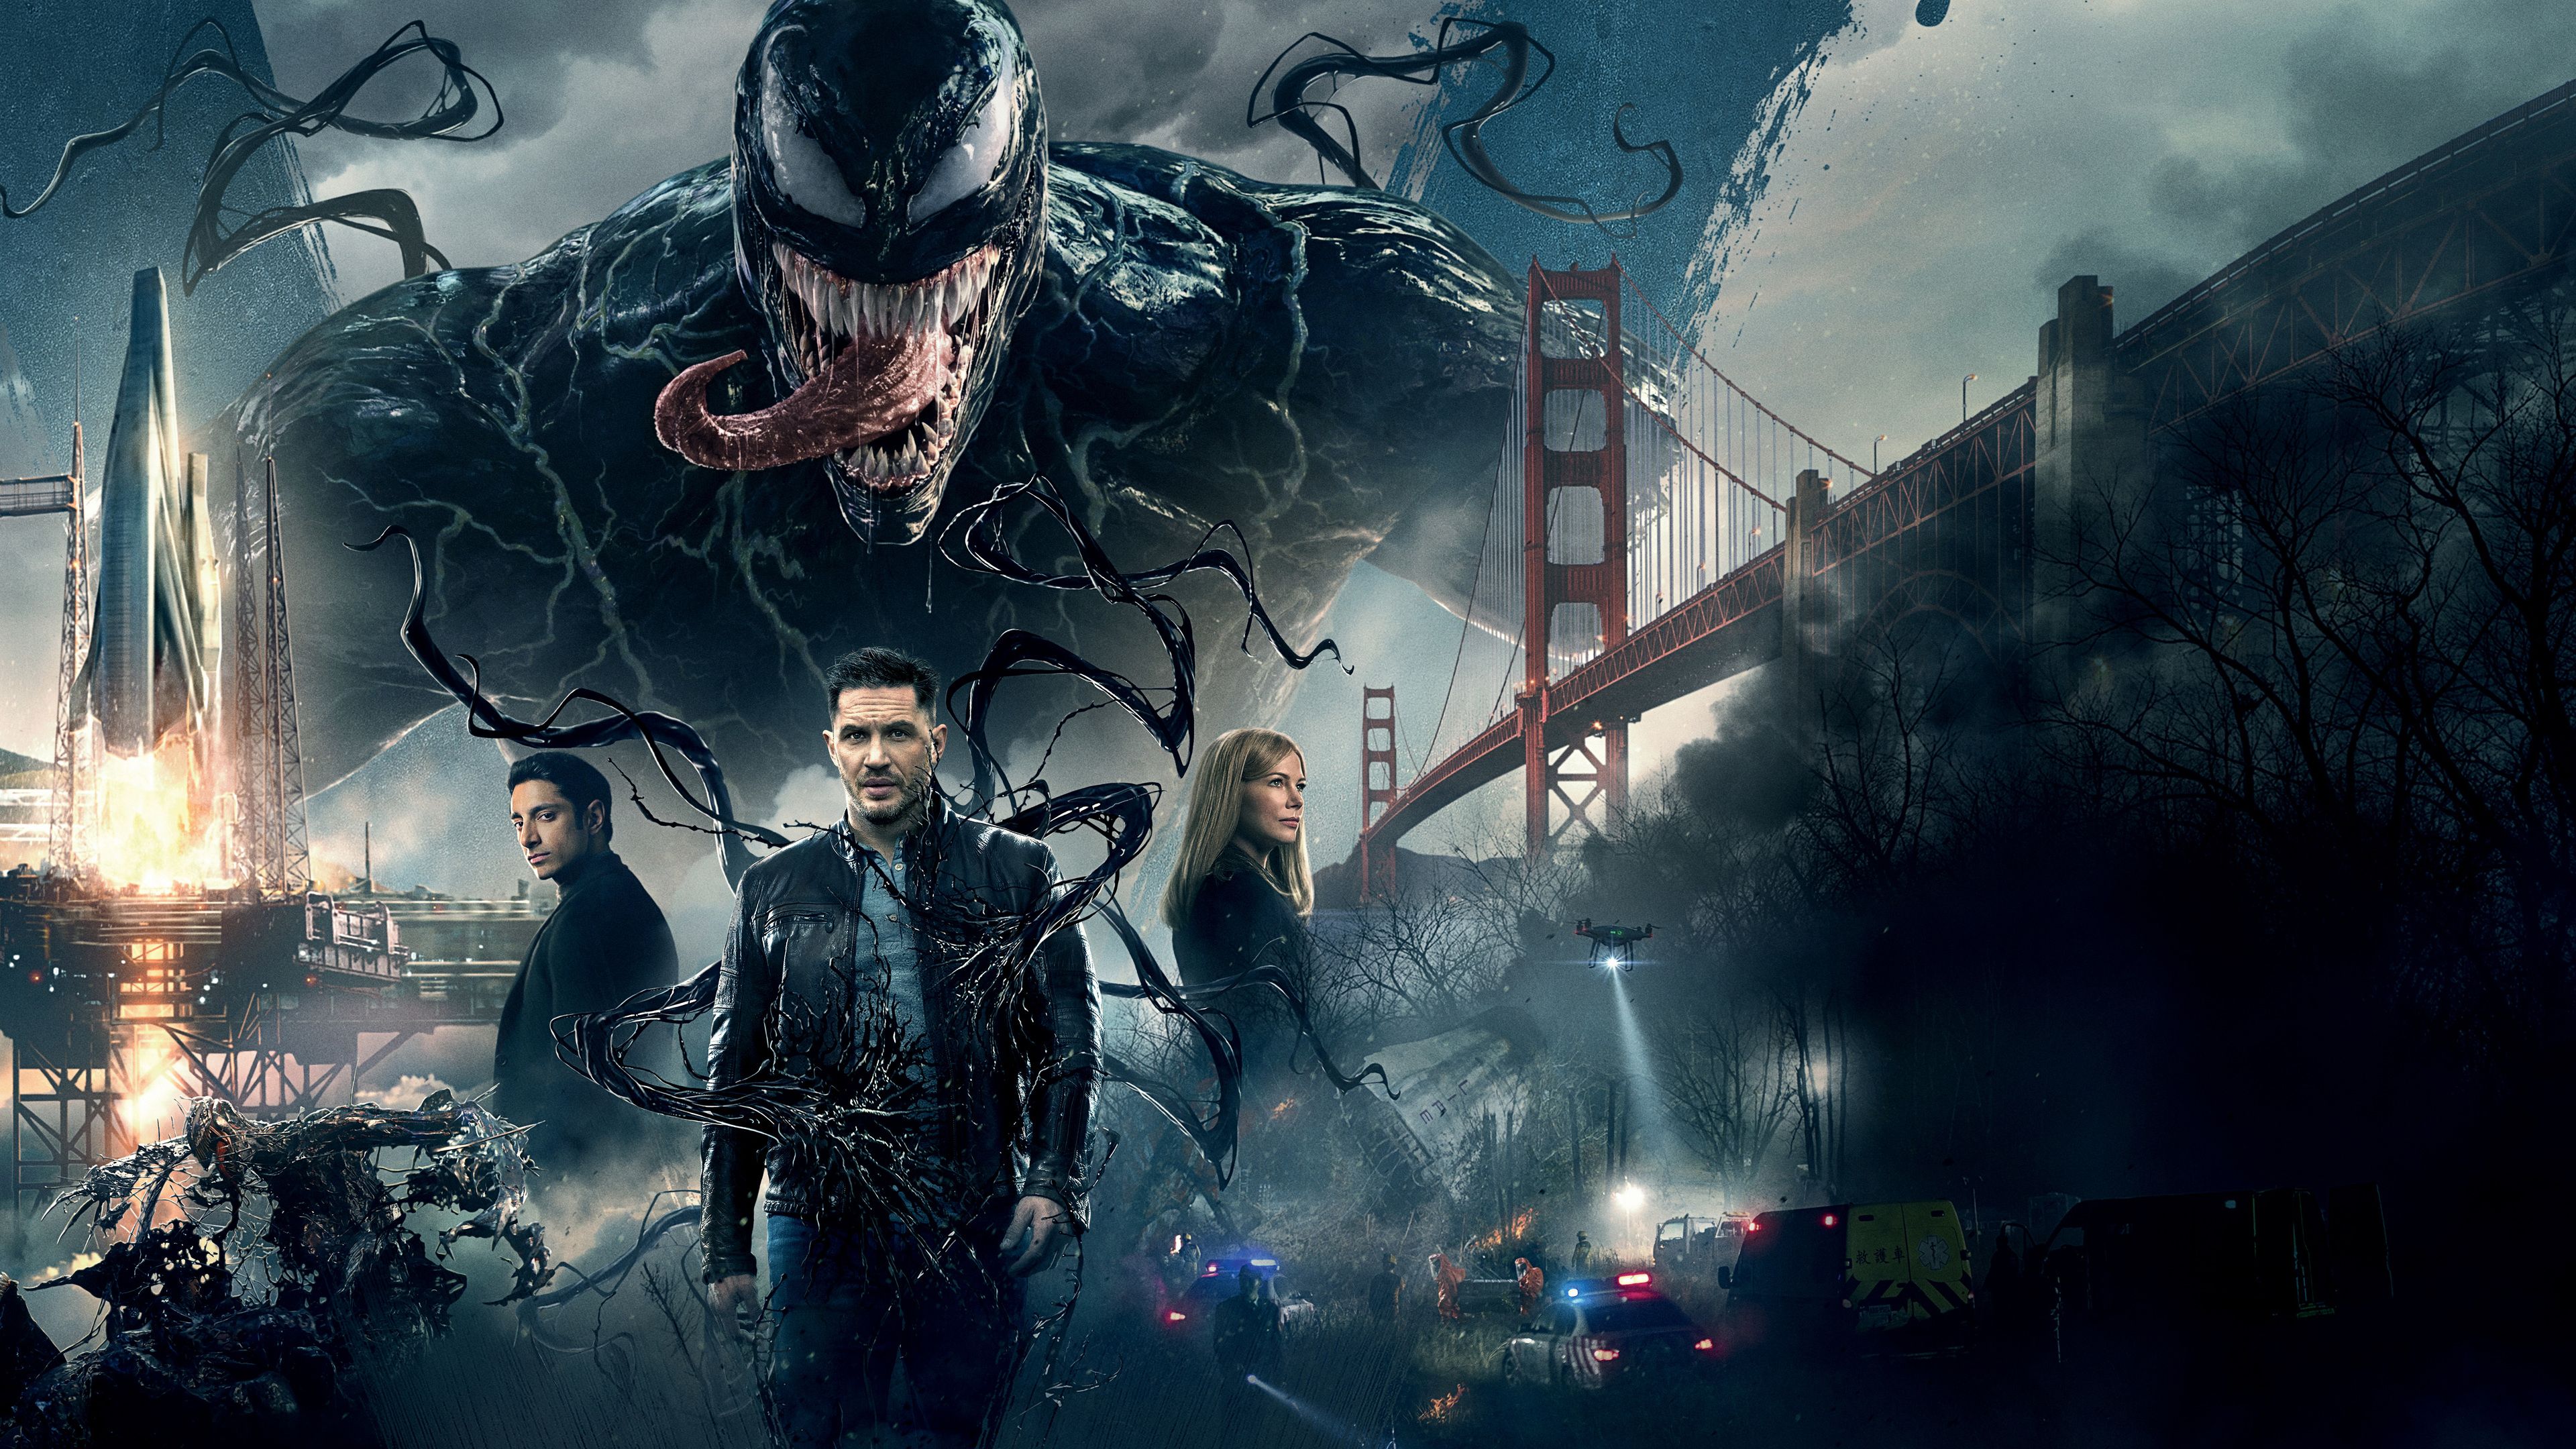 Wallpaper 4k Venom Movie 2018 8k 2018 Movies Wallpaper, 4k